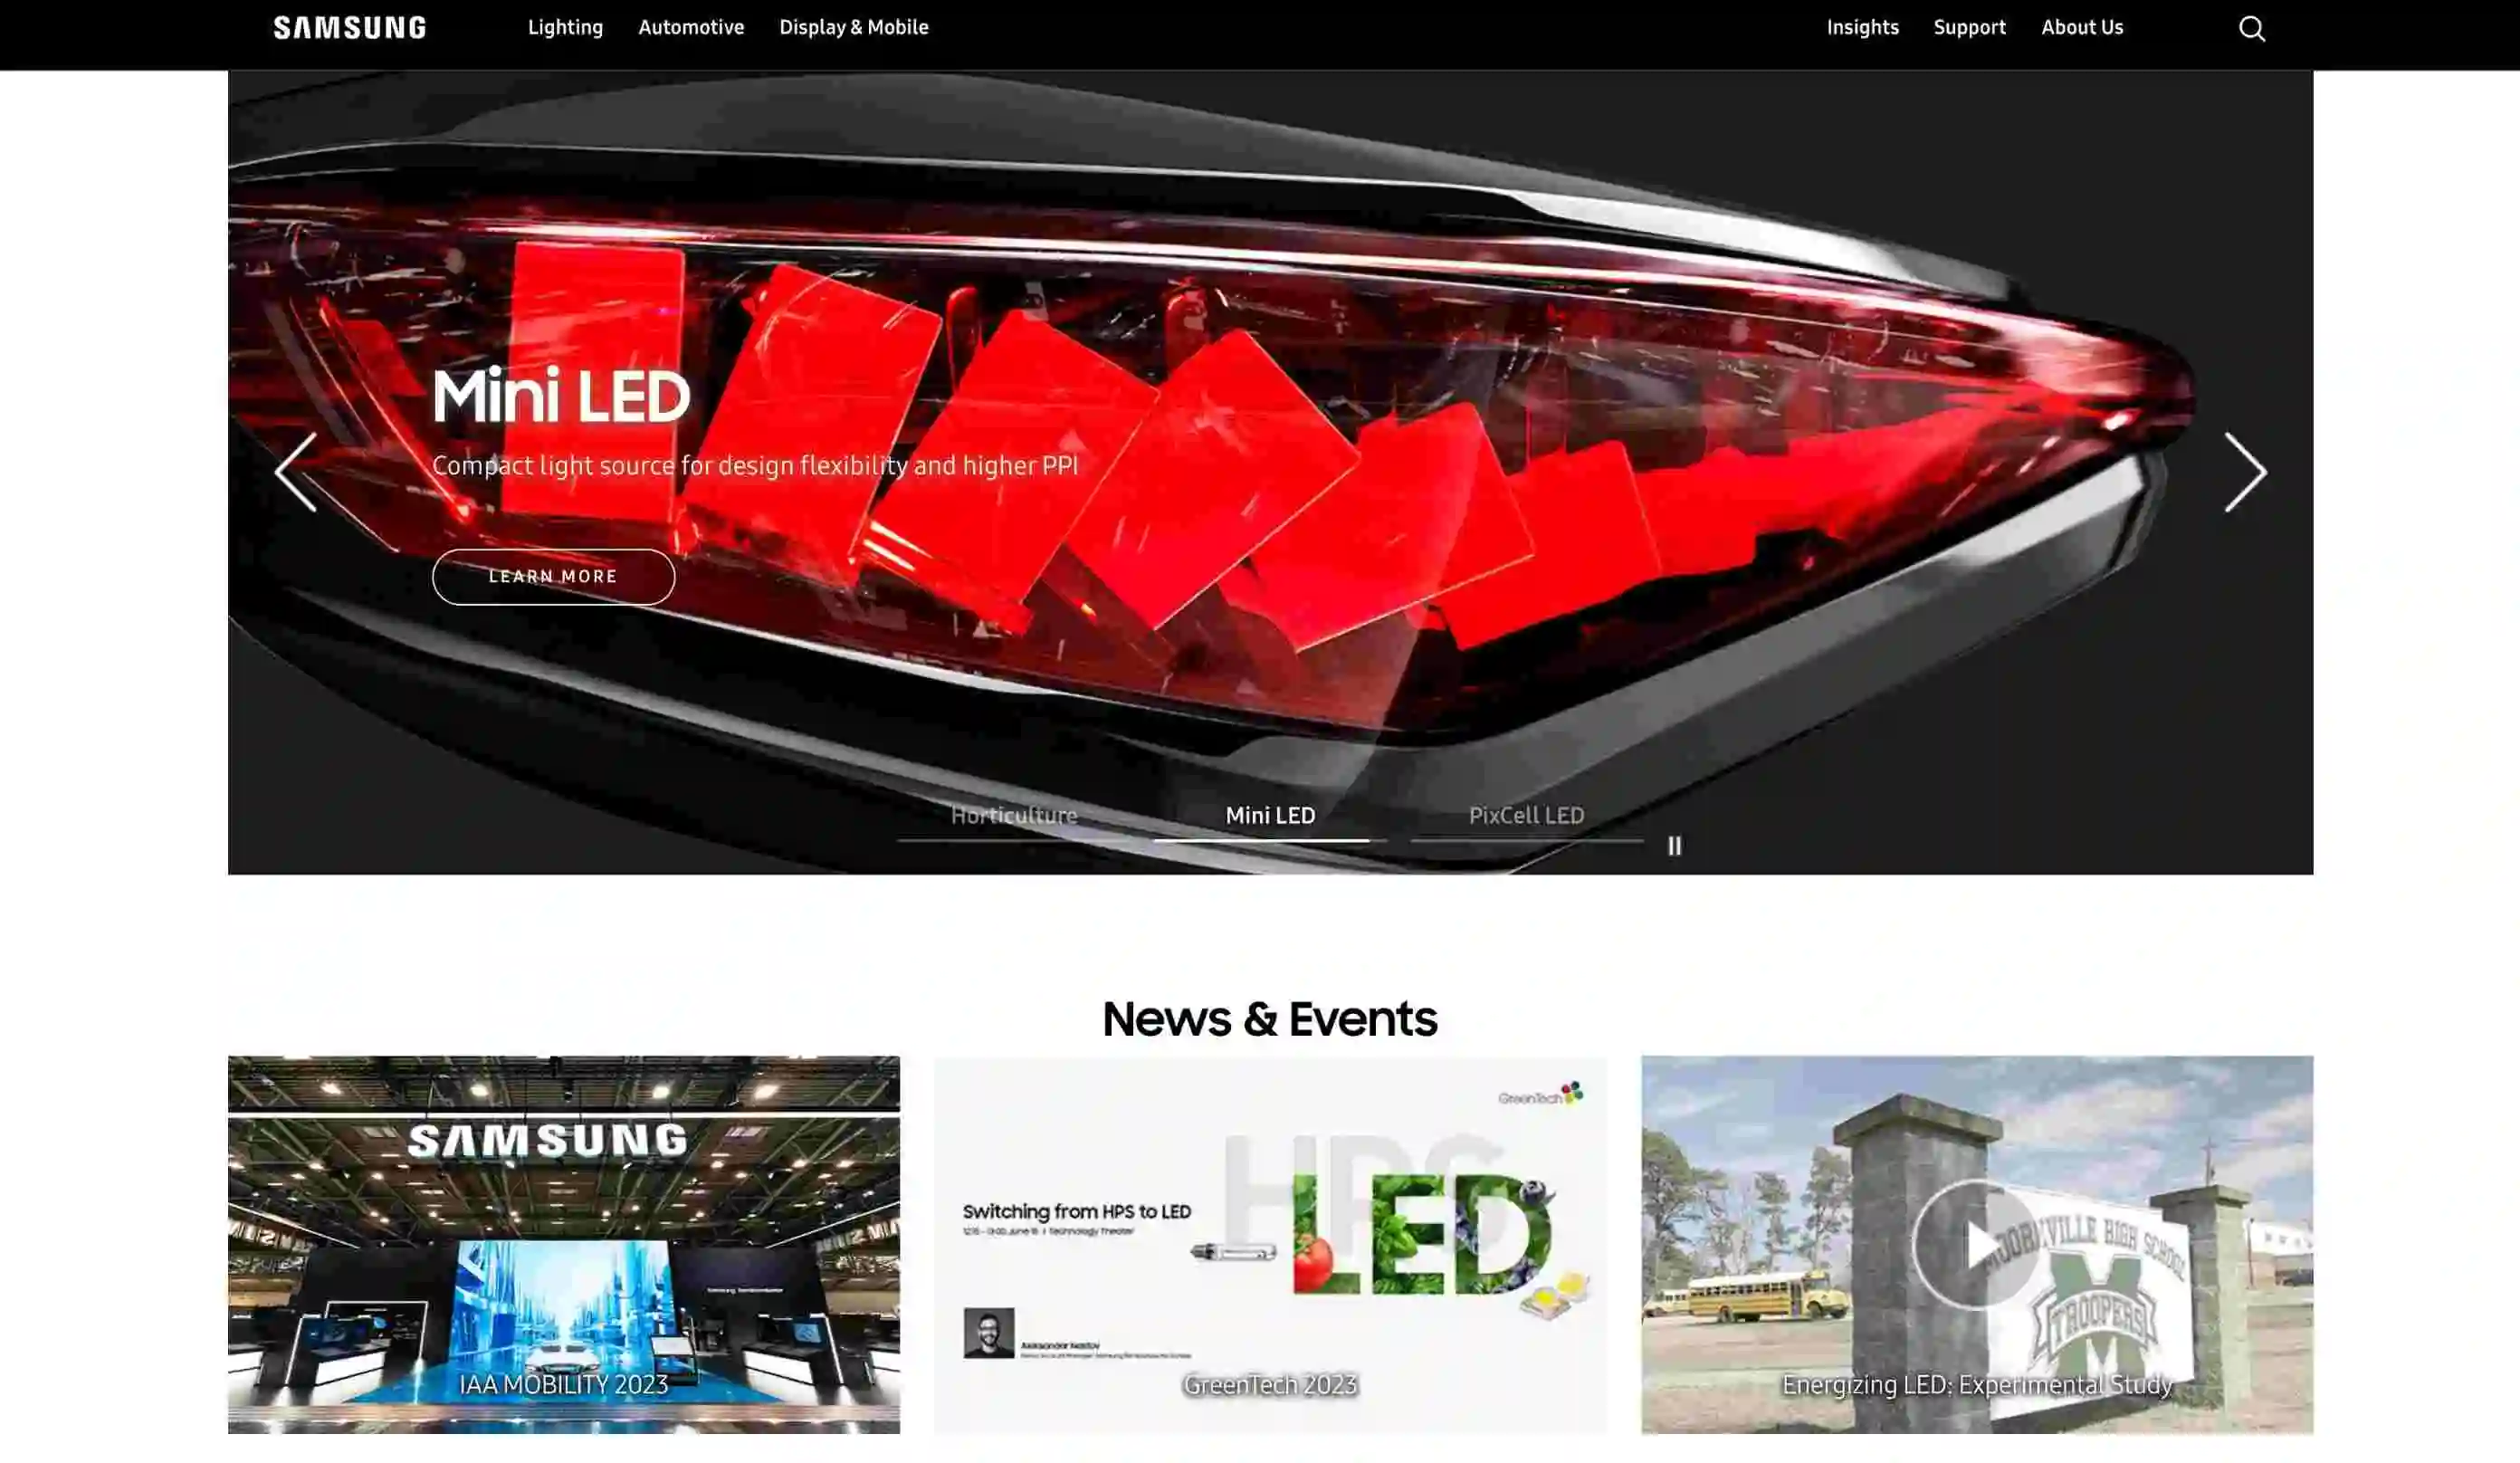 الصفحة الرئيسية لموقع الويب الخاص بشركة Samsung LED والتي تسلط الضوء على حلول الإضاءة LED المبتكرة الخاصة بها